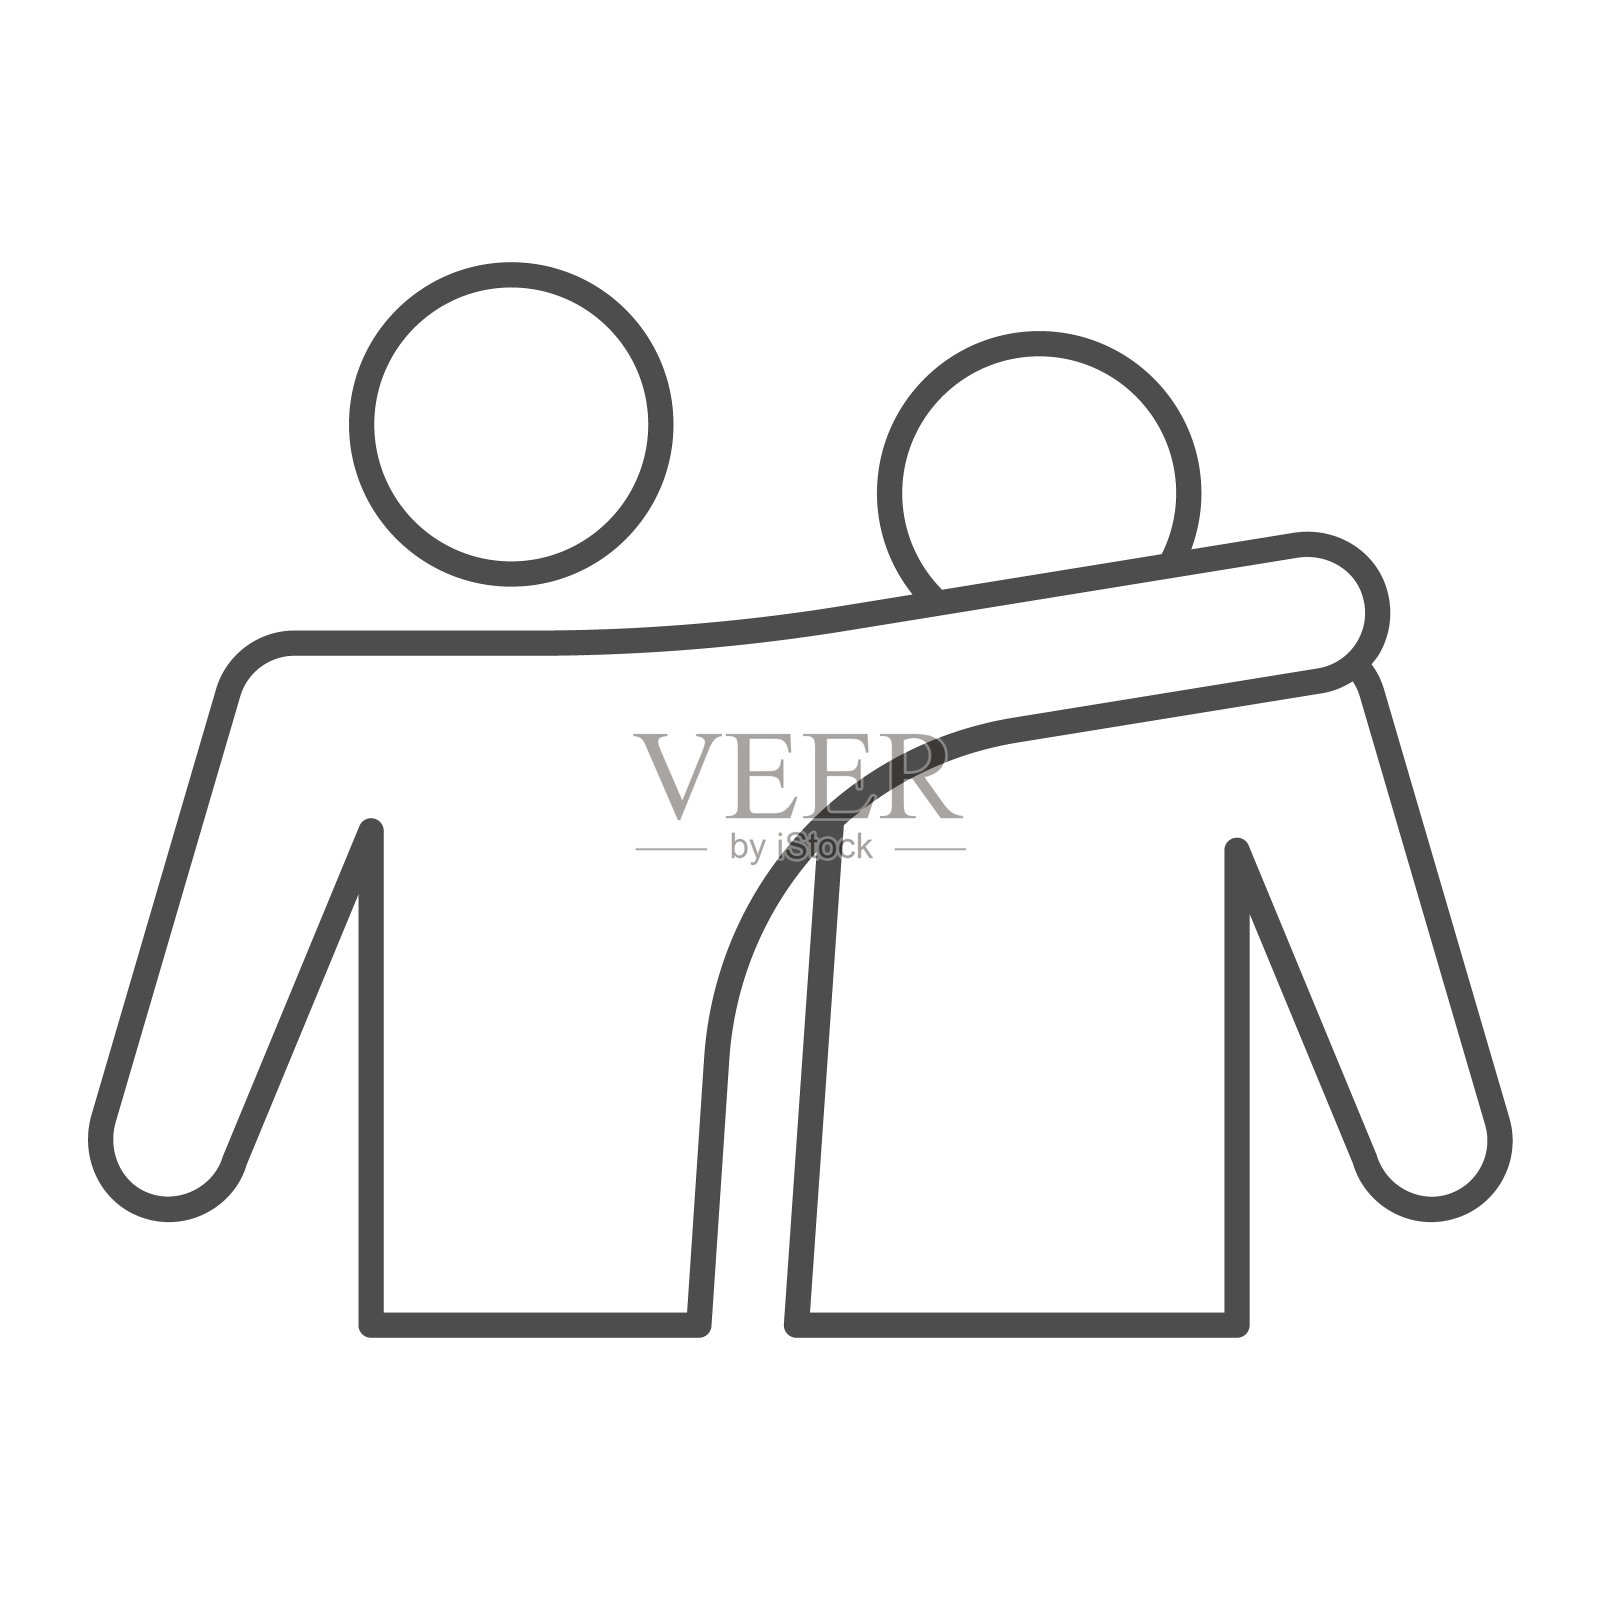 两个朋友细线图标。幸福的人紧紧拥抱，友谊的象征，轮廓风格的象形文字在白色的背景。手机概念和网页设计的关系标志。矢量图形。图标素材